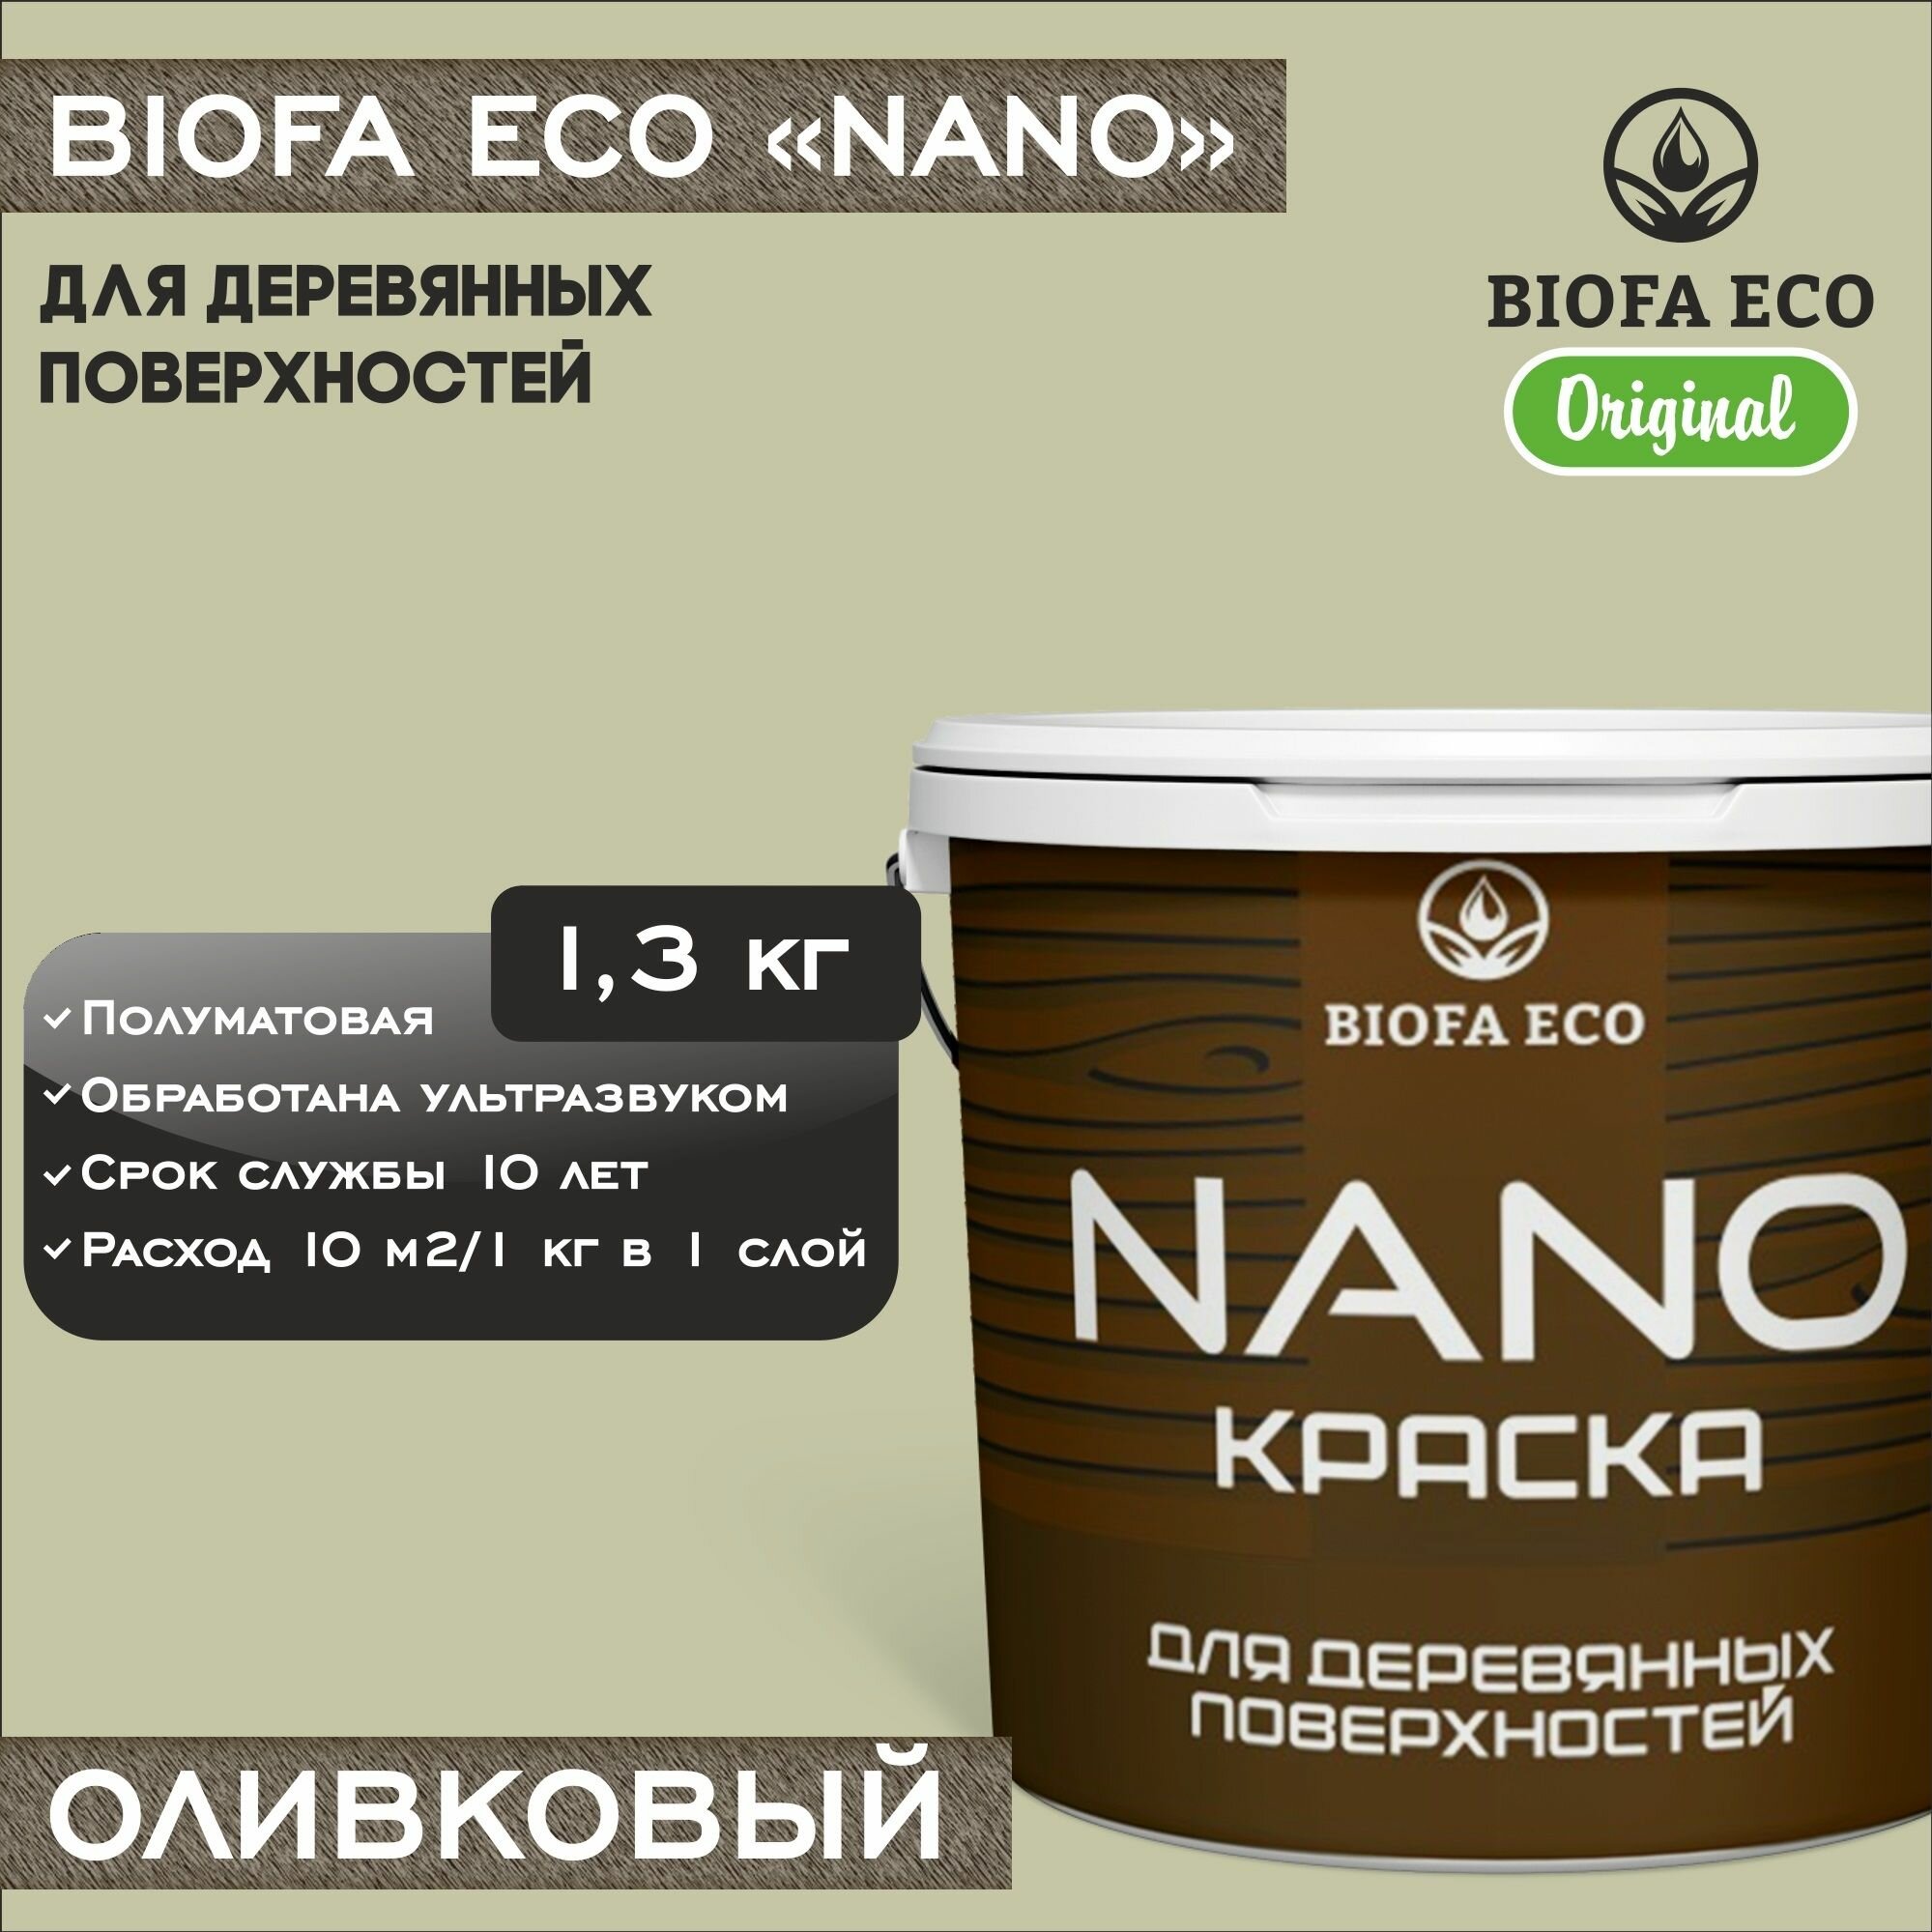 Краска BIOFA ECO NANO для деревянных поверхностей, укривистая, полуматовая, цвет оливковый, 1,3 кг